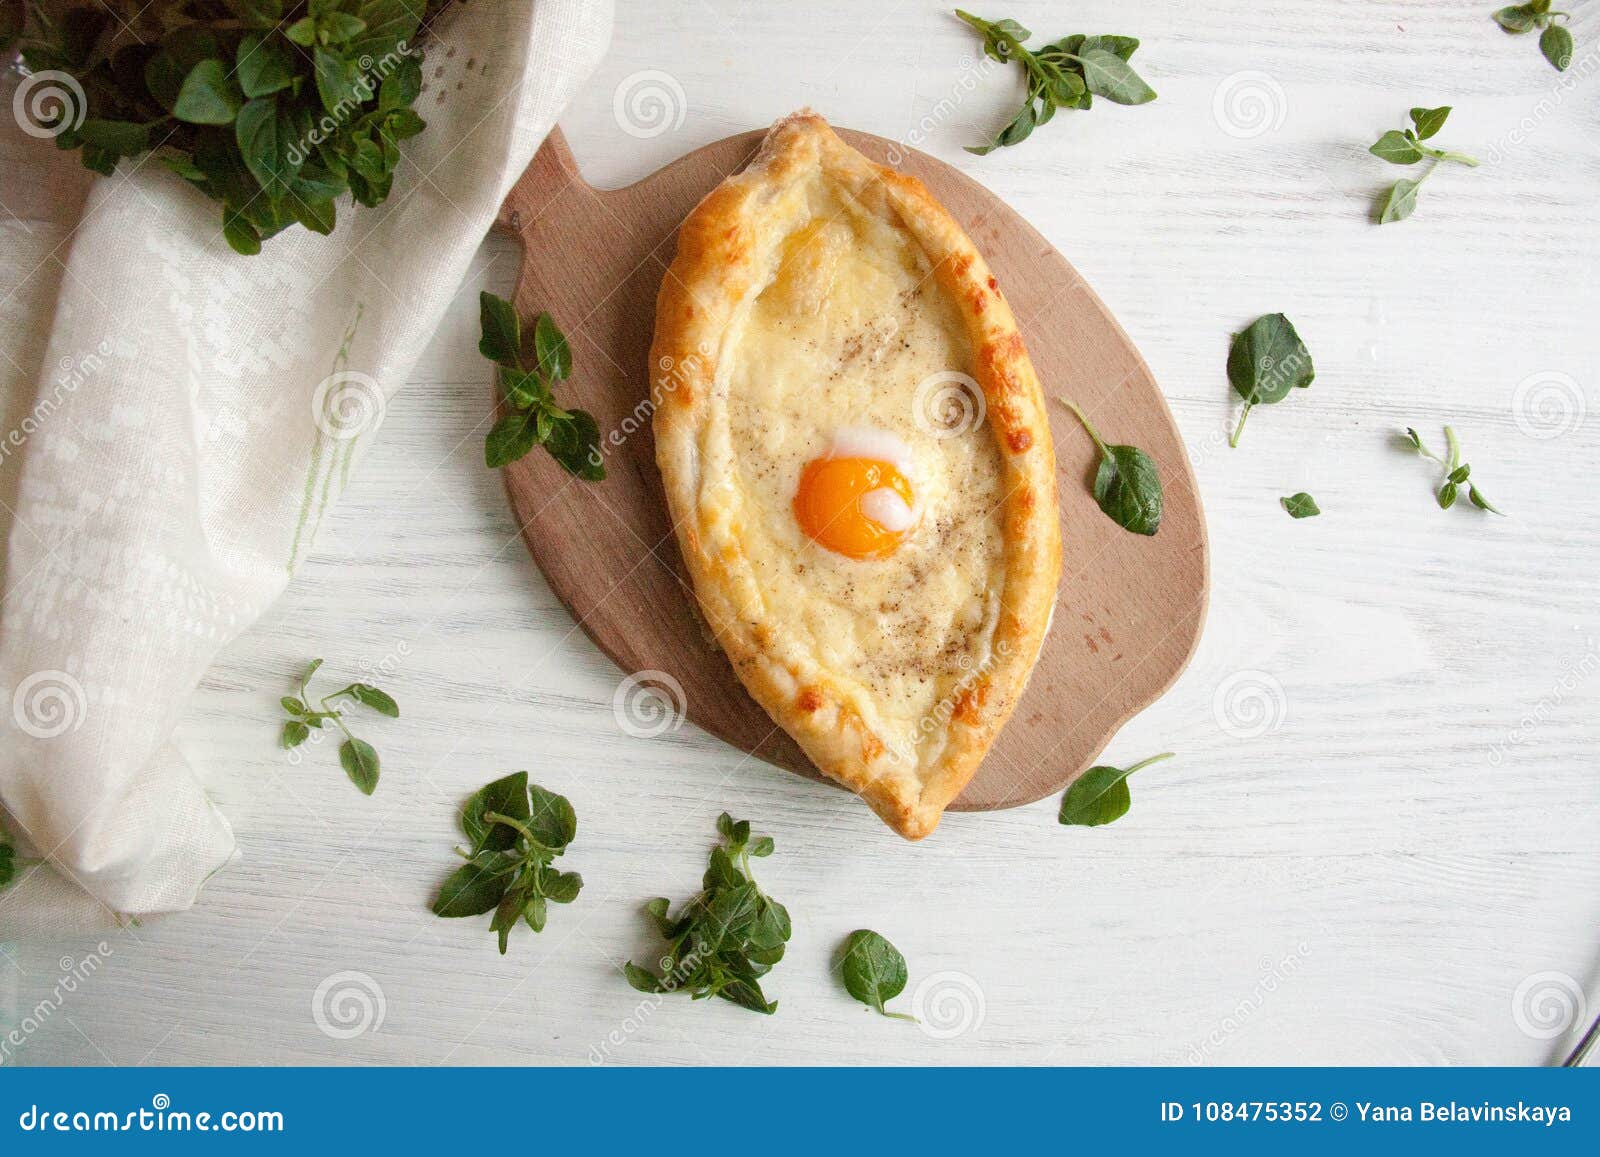 Perfekt sund lunchidé: Ägg som bakas med ost i ett bröd